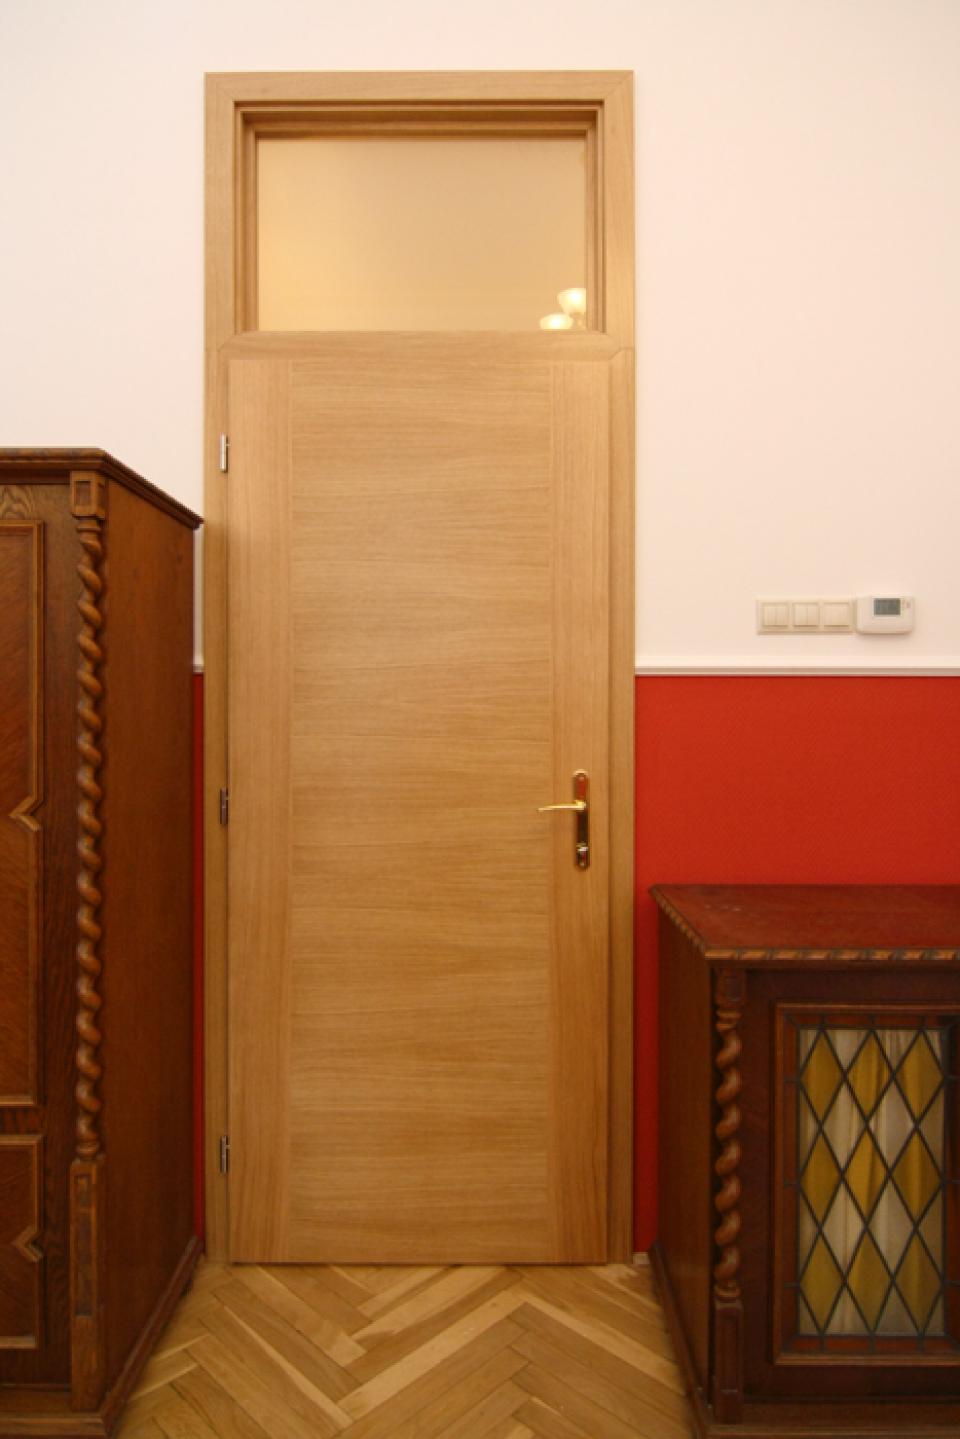 Bilbao ajtók egy ügyvédi irodában | Referencia - Ajtóház